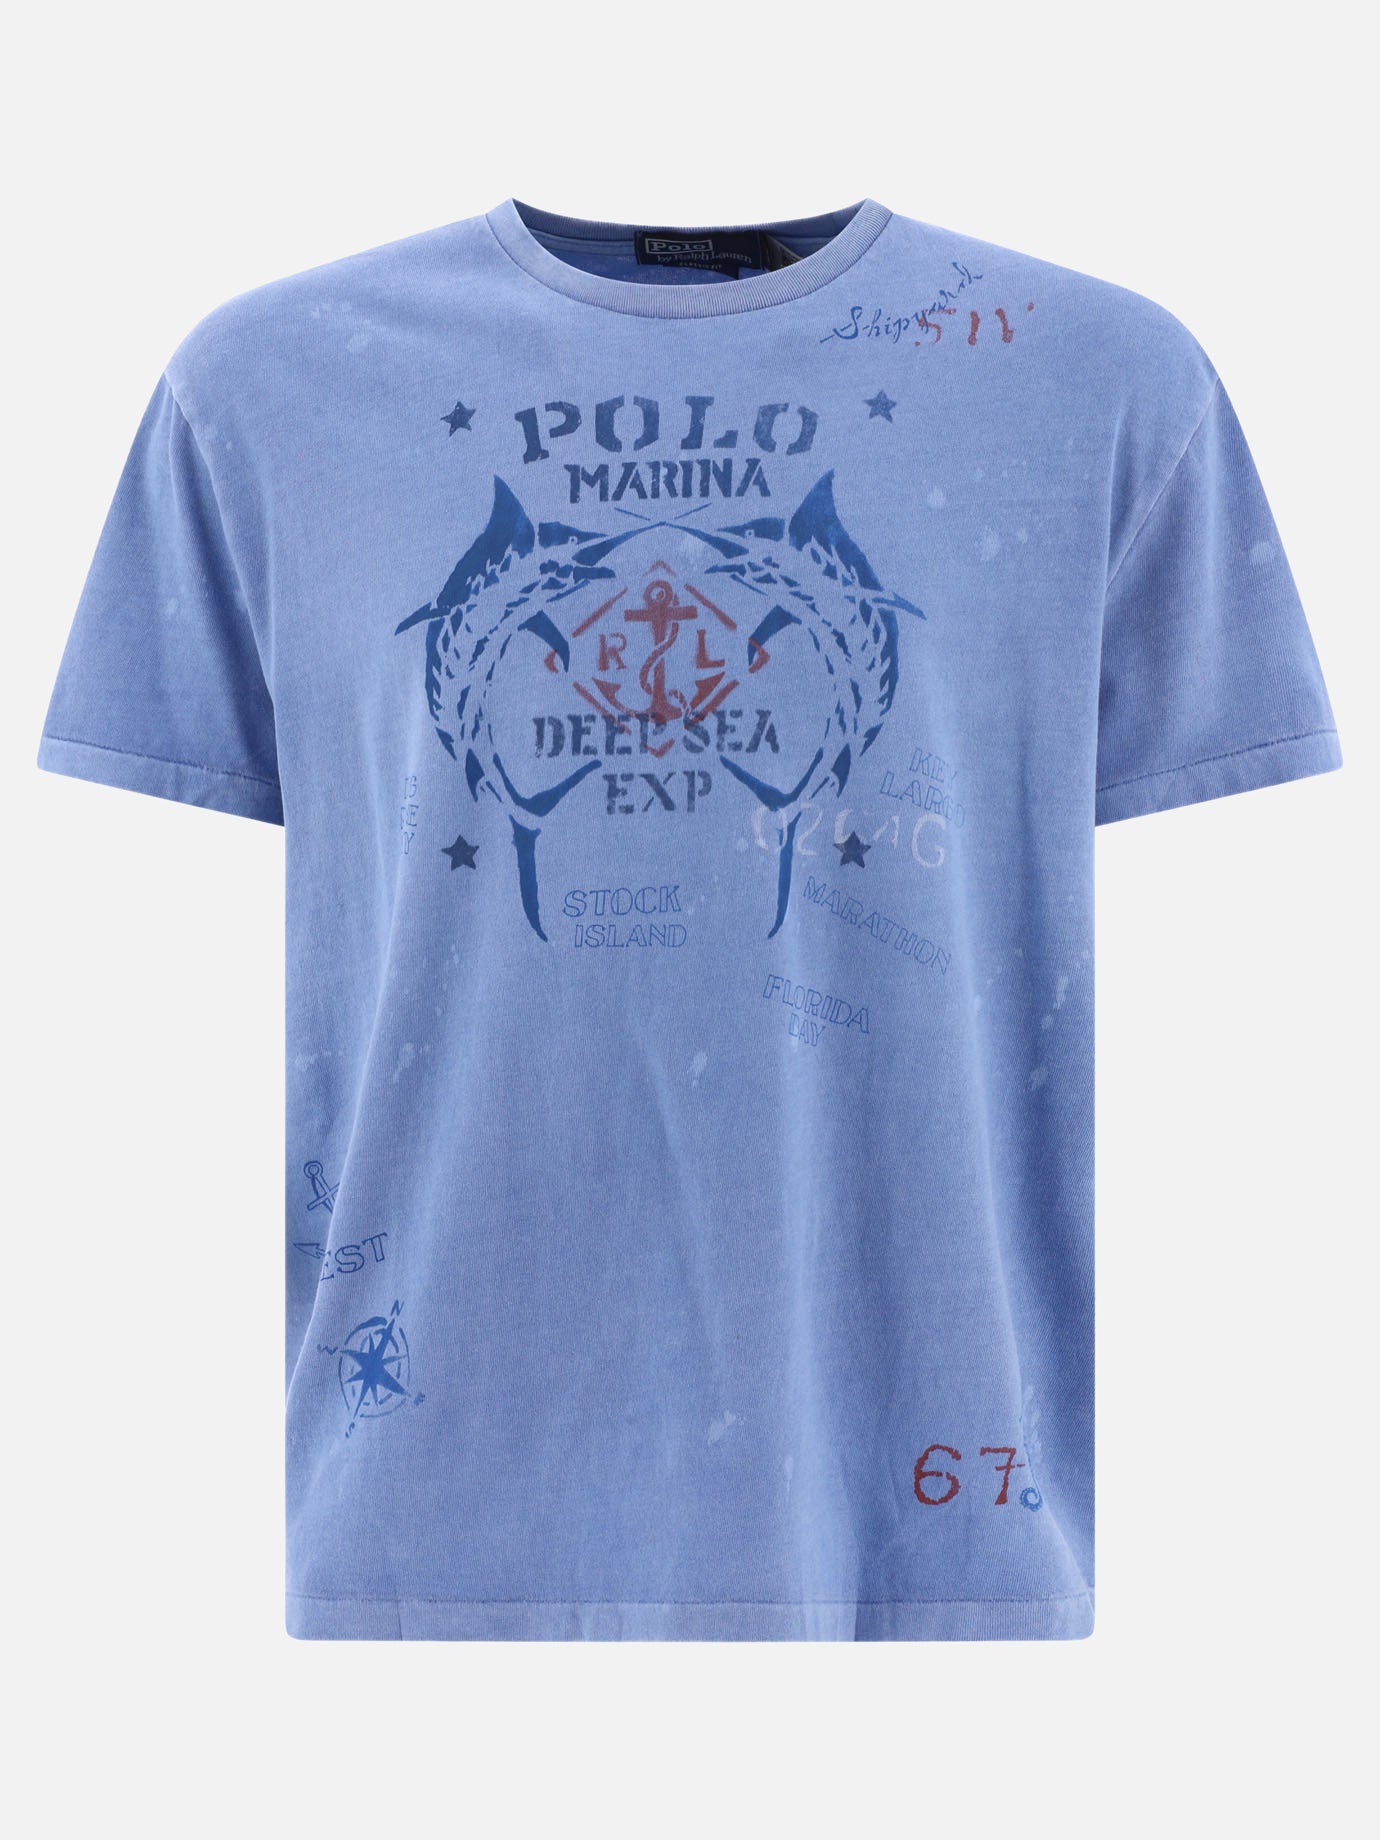 "Polo Marina" t-shirt